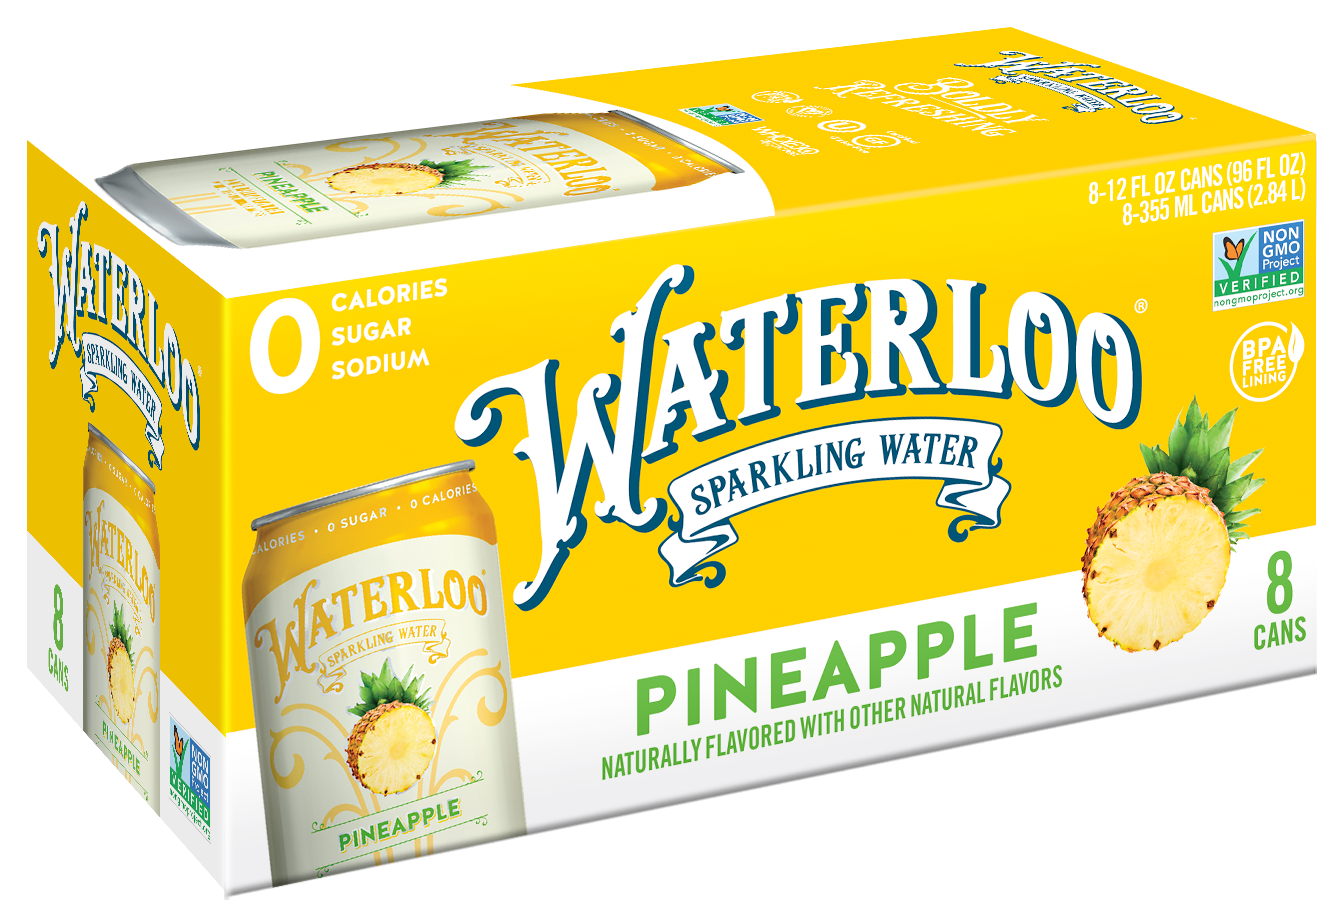 Waterloo Pineapple Sparkling Water 3 innerpacks per case 96.0 fl